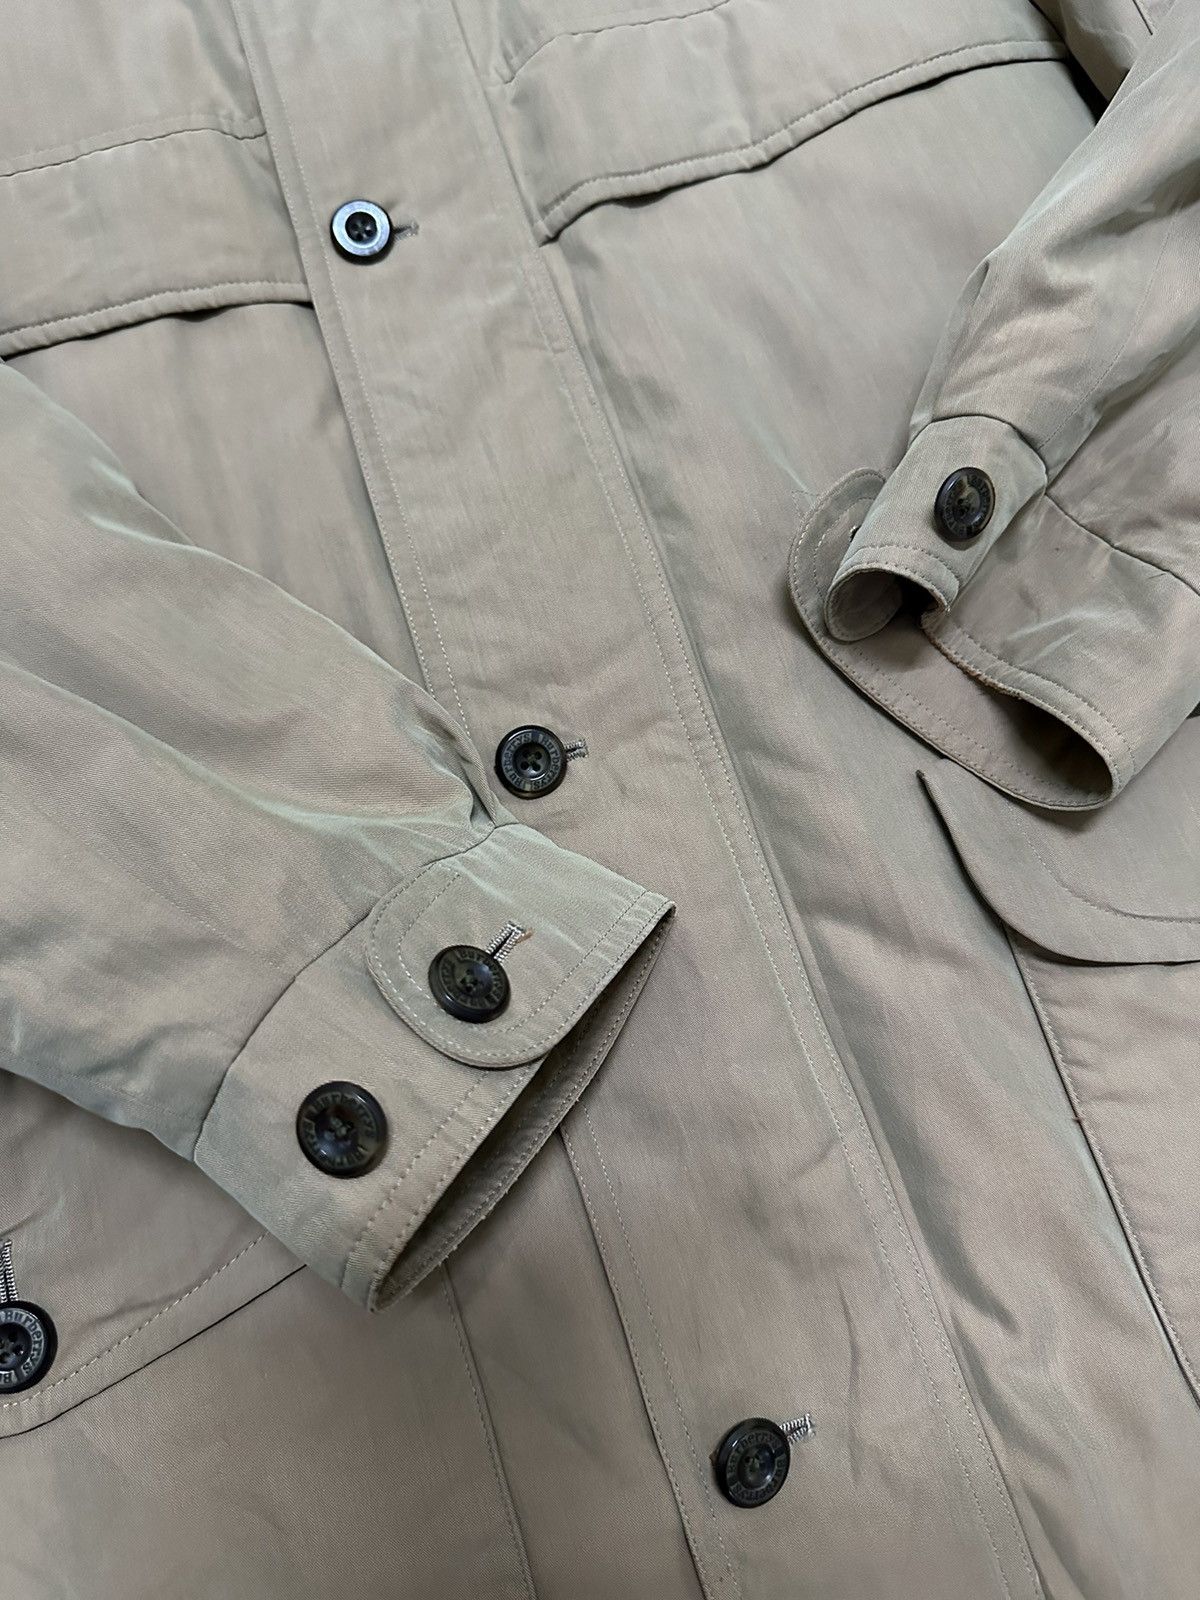 Vintage Burberry Parka Jacket Design Double Pocket Design - 8